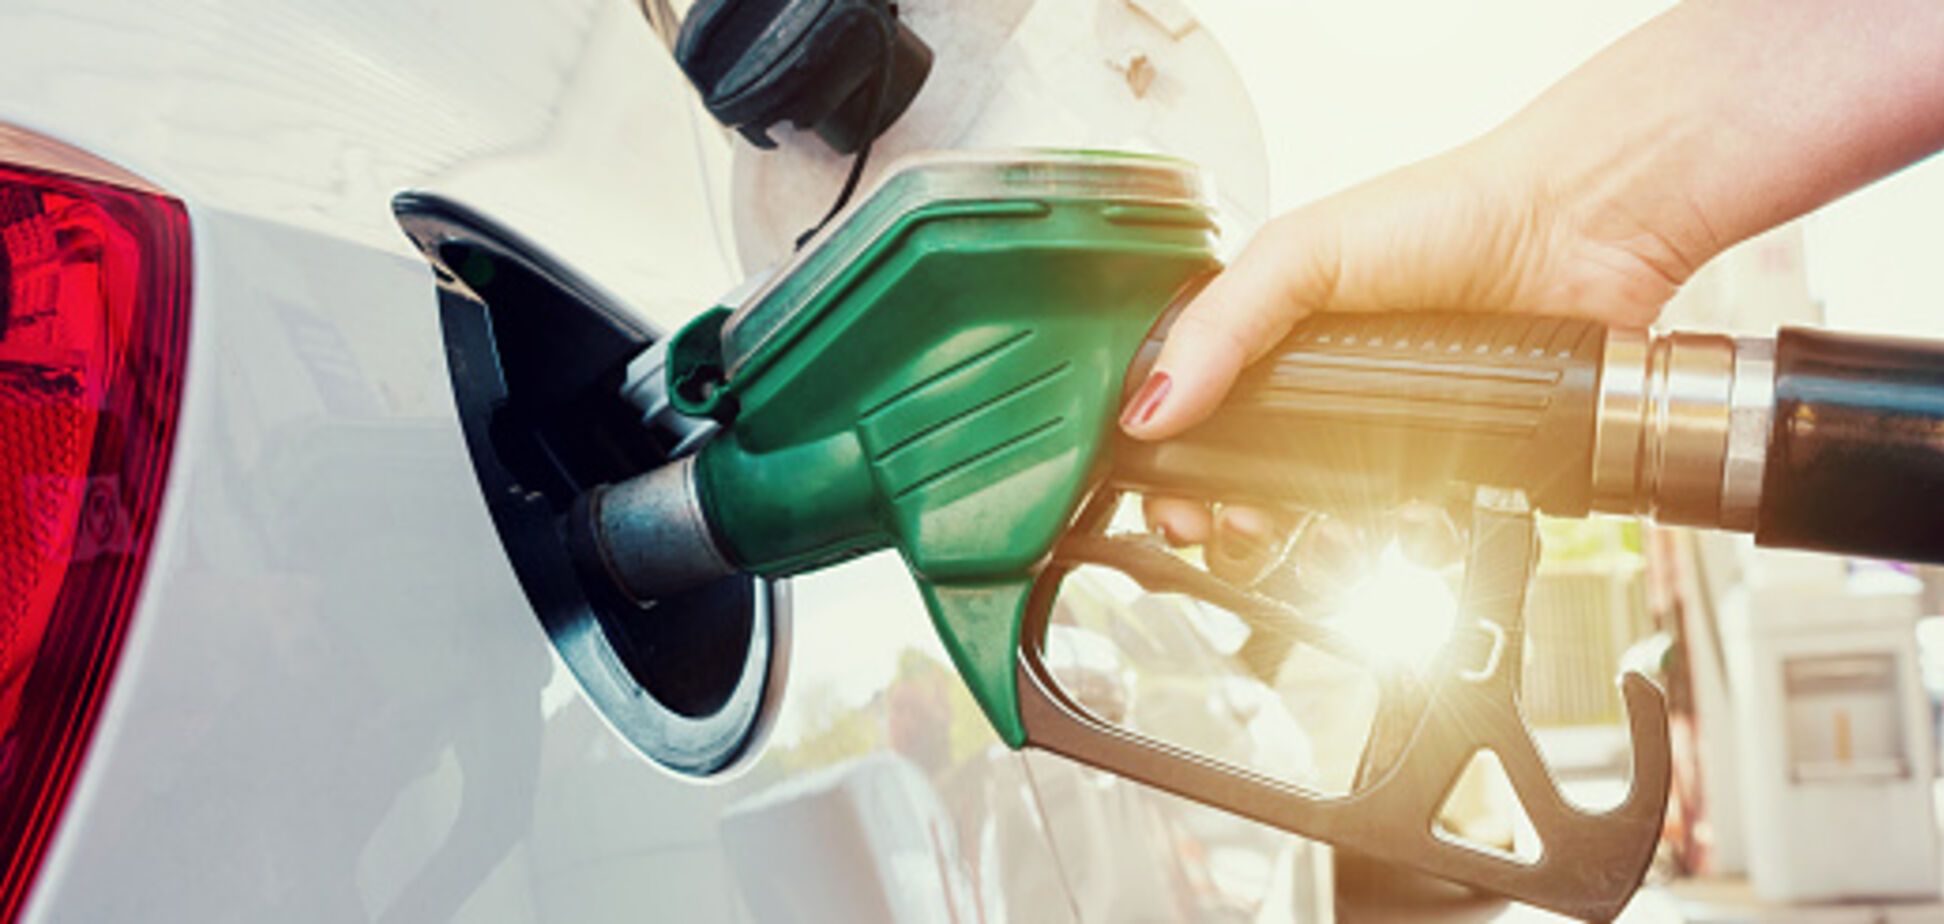 Скачок цен на бензин в Украине: появился тревожный прогноз до конца января